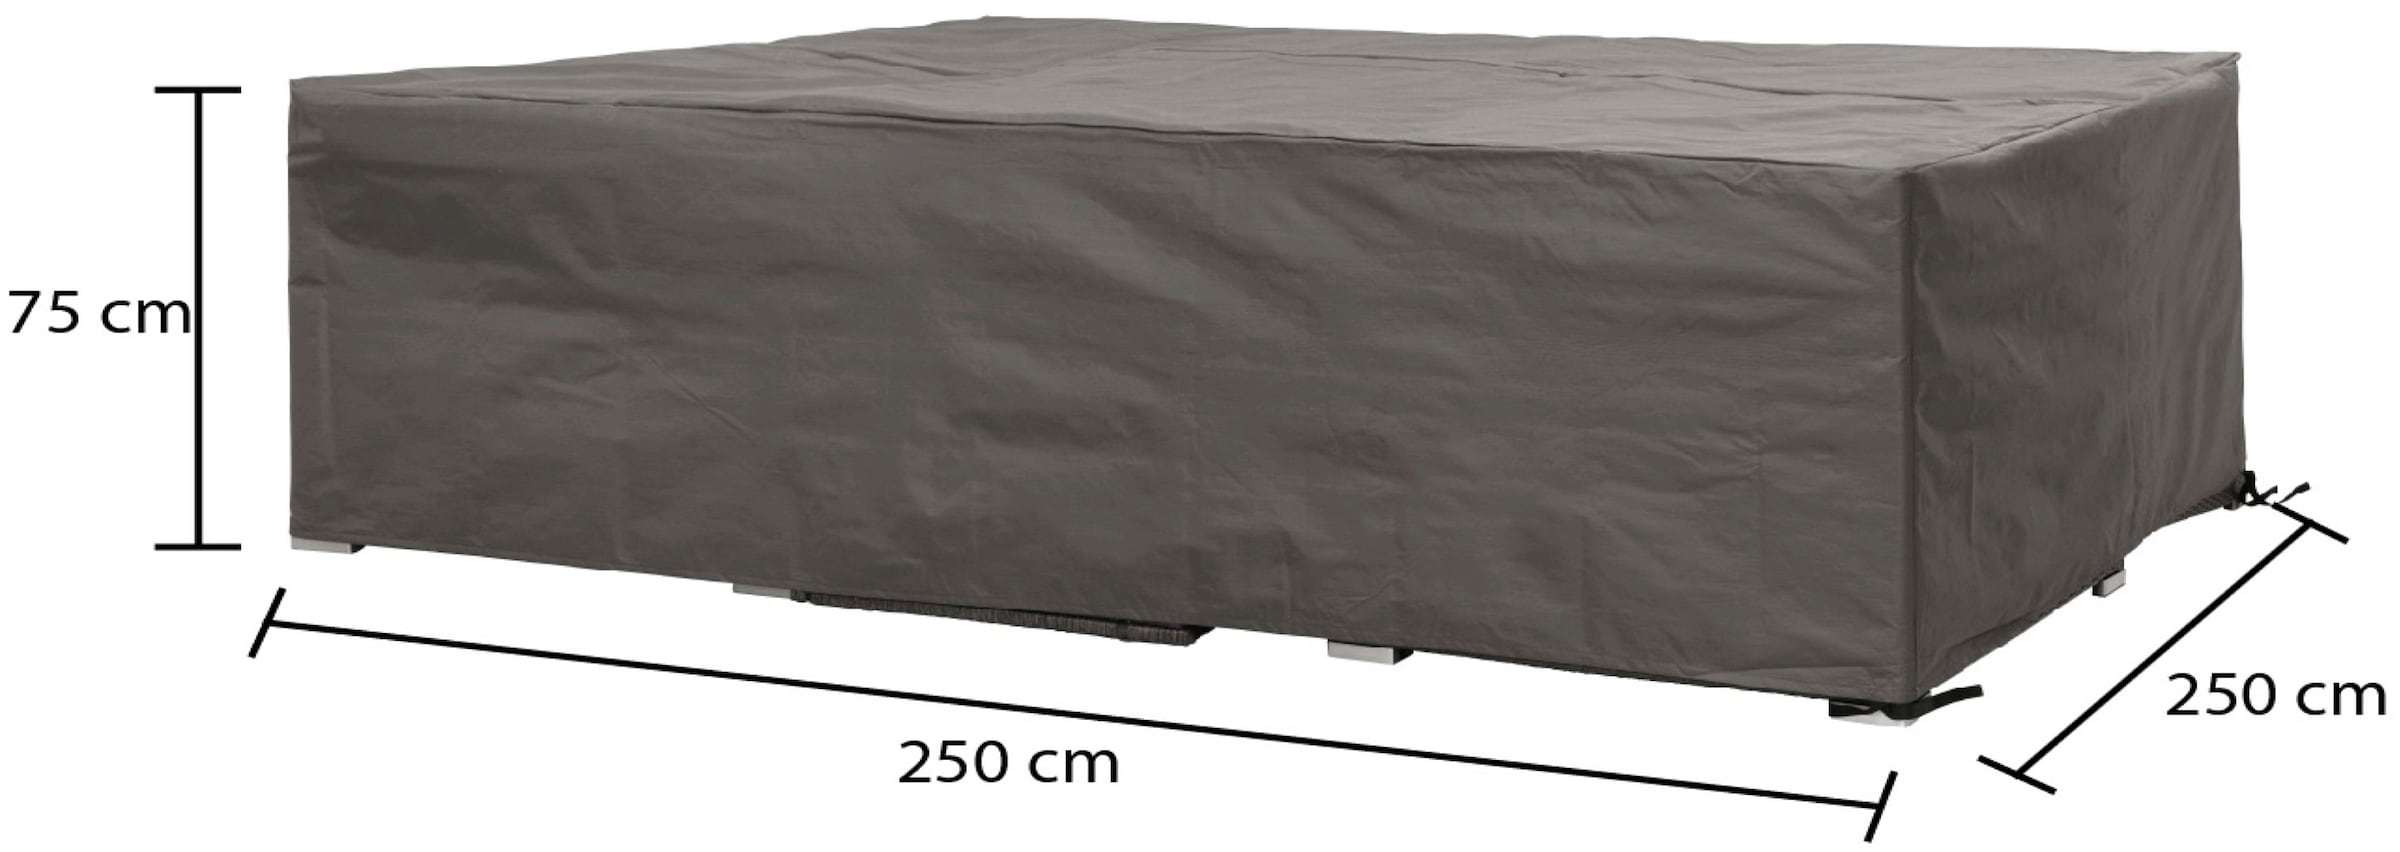 winza outdoor covers Gartenmöbel-Schutzhülle, geeignet für Loungeset bis 250 cm